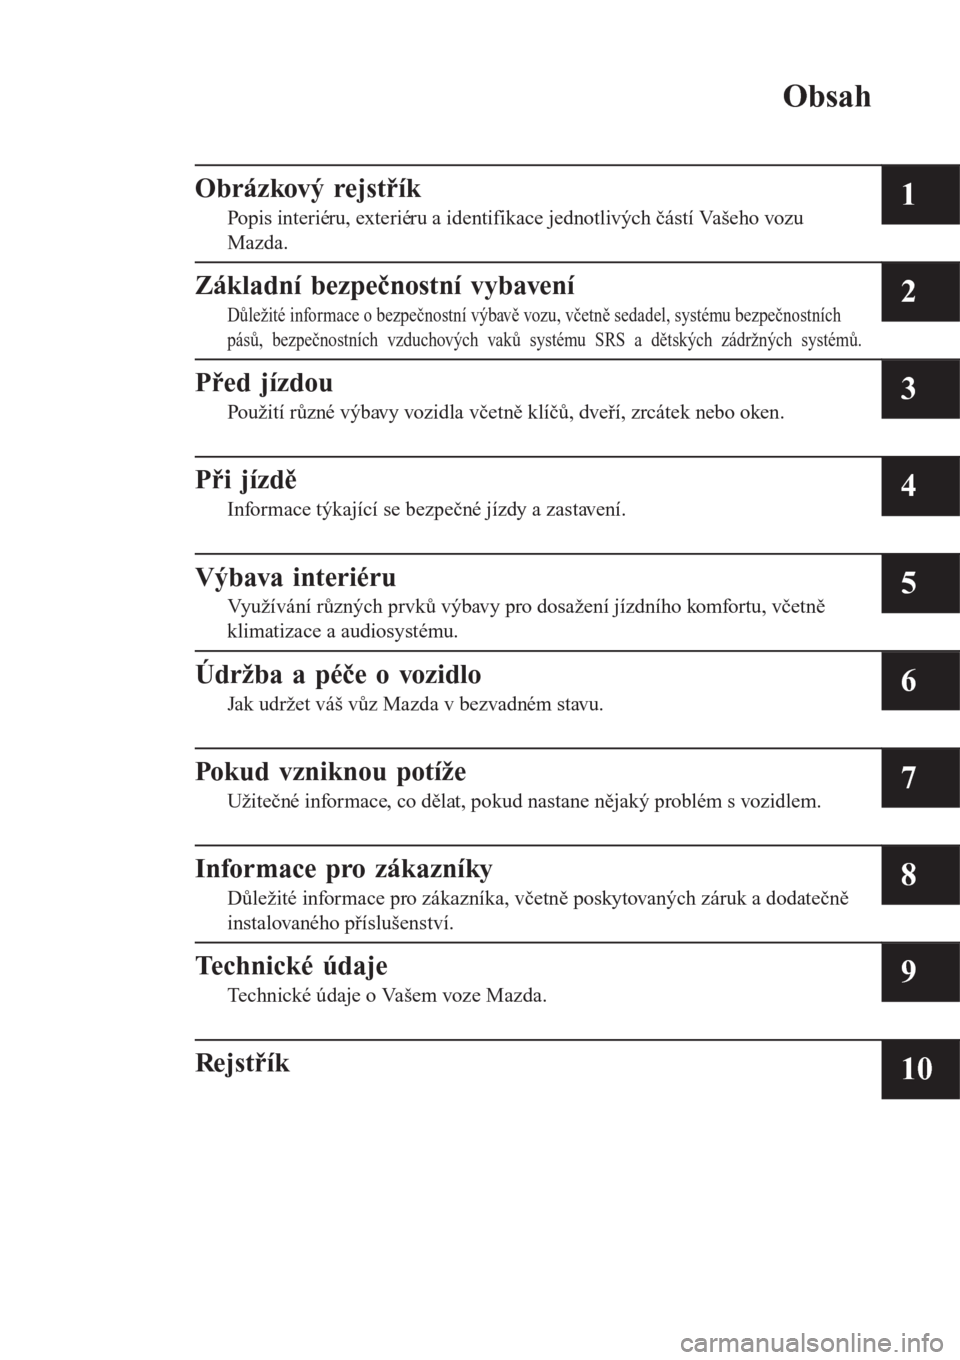 MAZDA MODEL 6 2016  Návod k obsluze (in Czech) Obsah
Obrázkový rejstřík
Popis interiéru, exteriéru a identifikace jednotlivých částí Vašeho vozu
Mazda.1
Základní bezpečnostní vybavení
Důležité informace o bezpečnostní výbavě